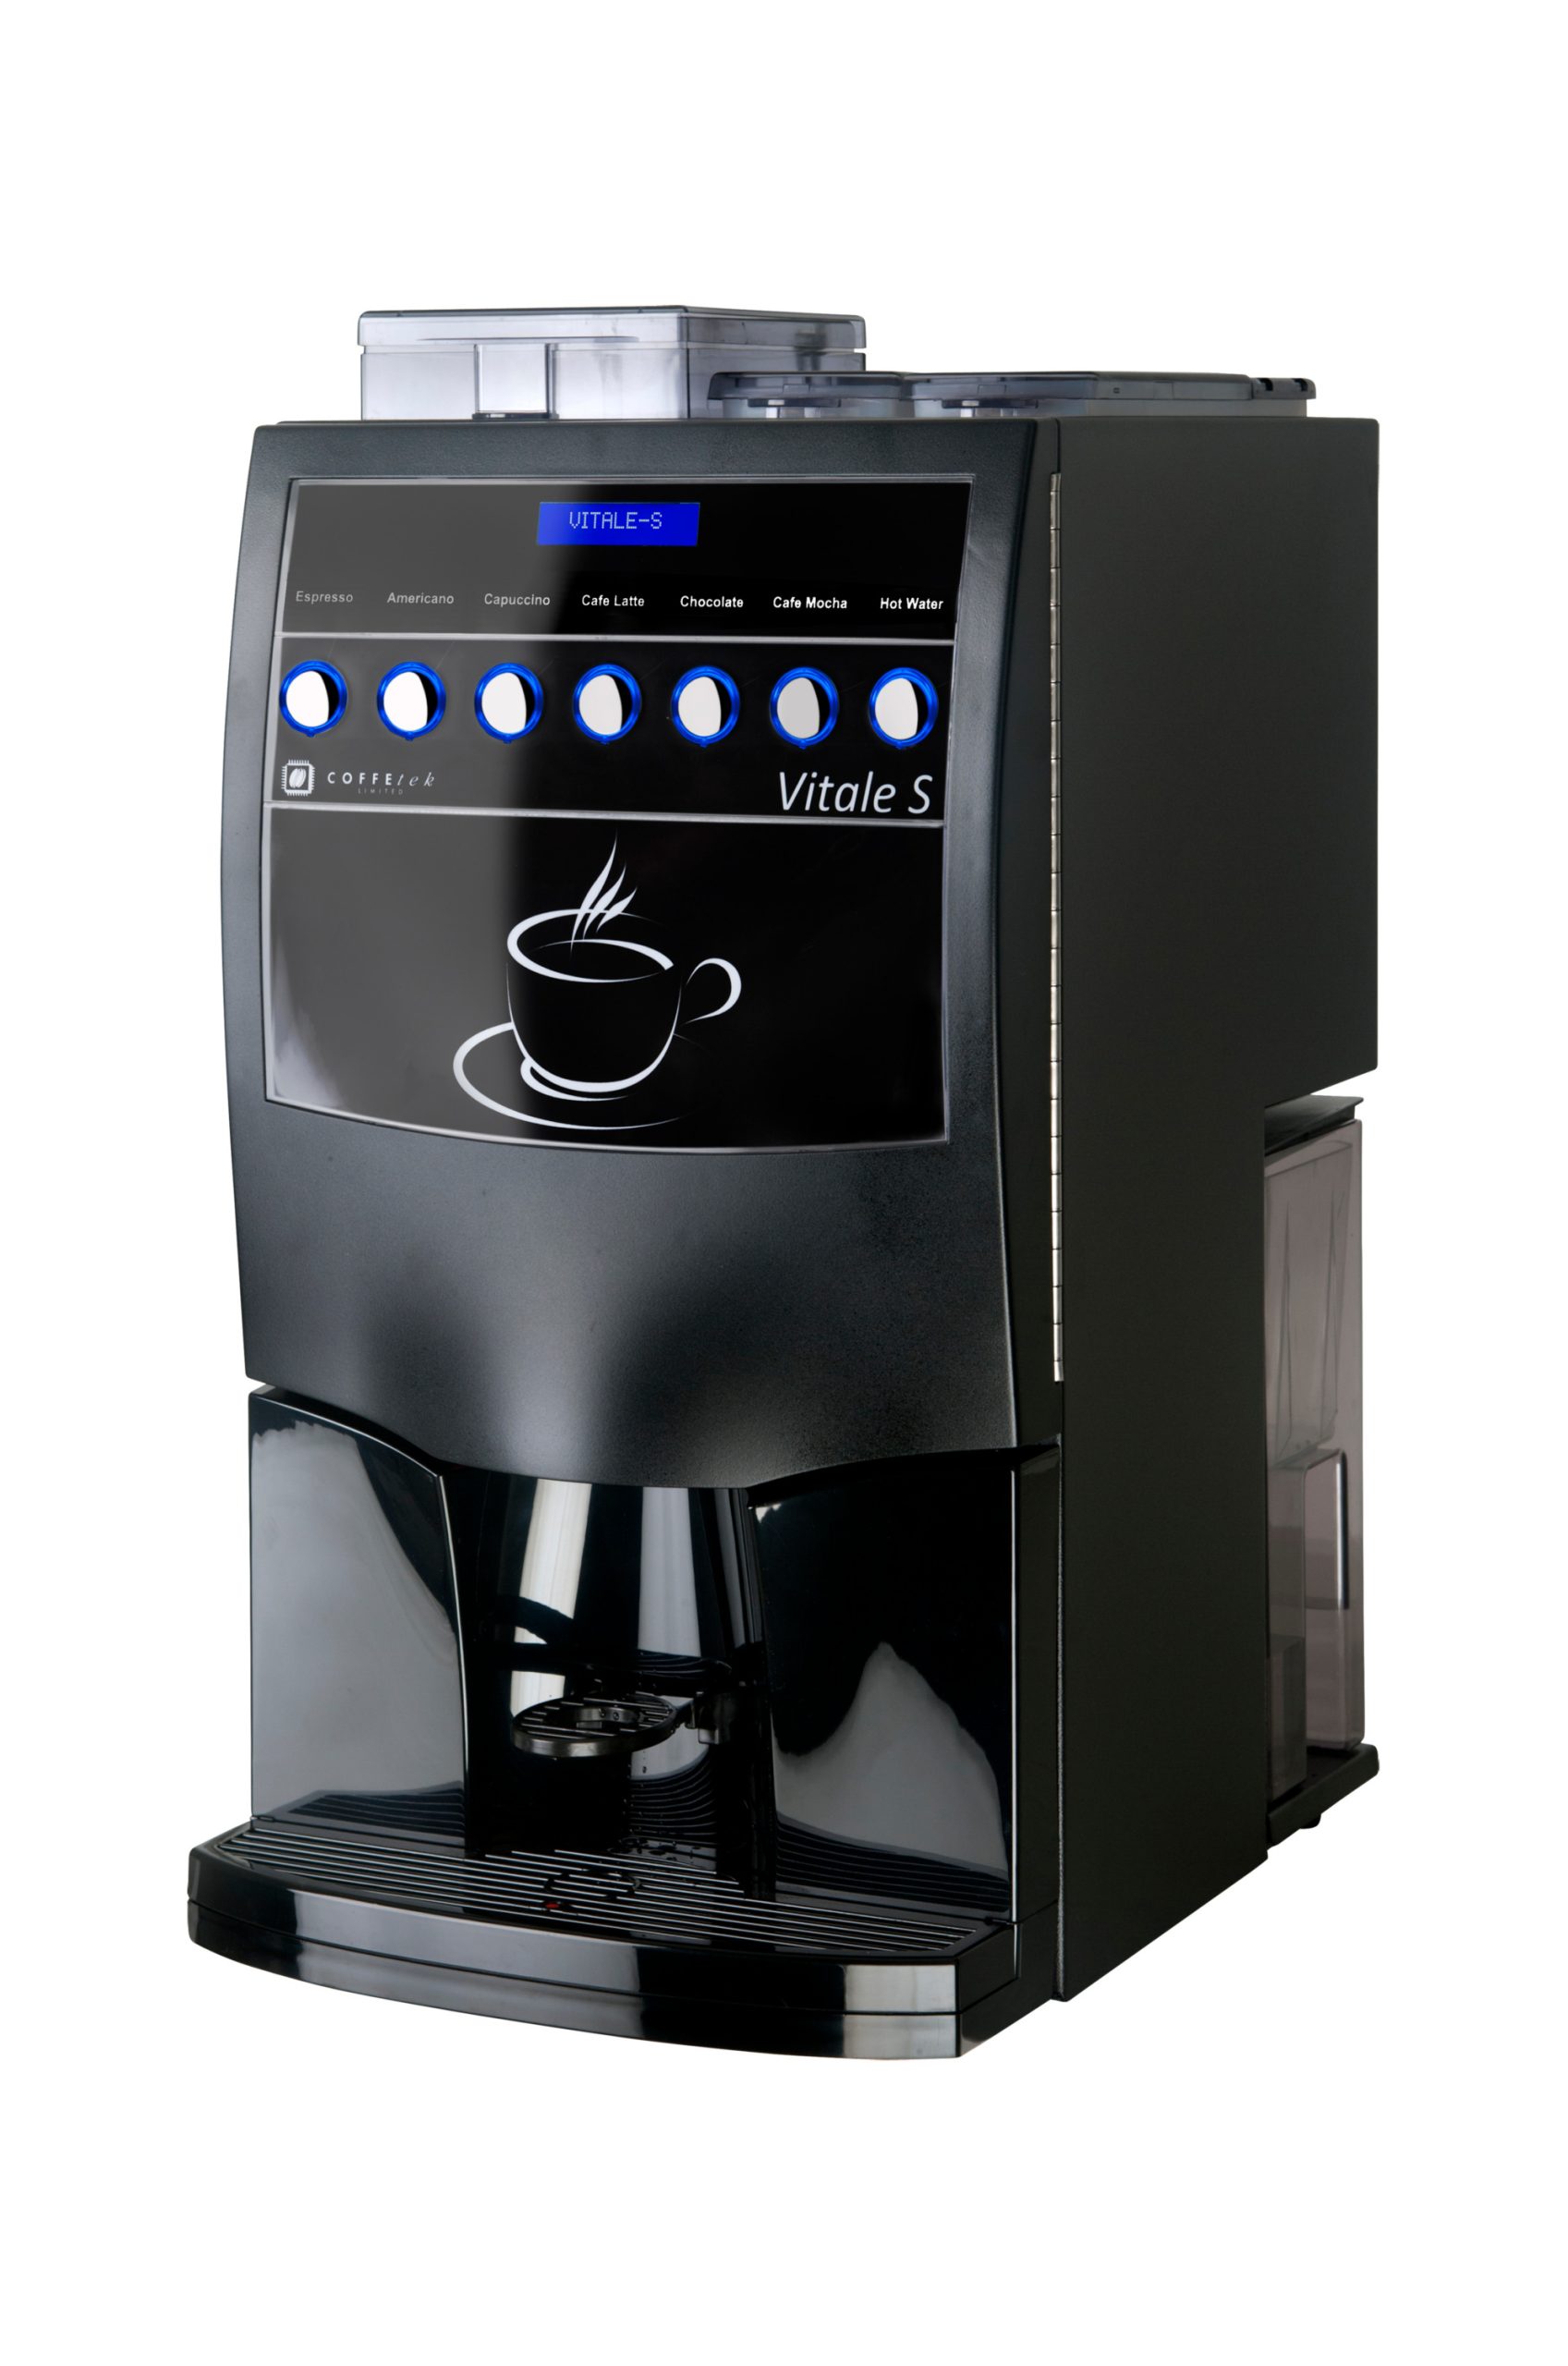 Vitale S coffee machine